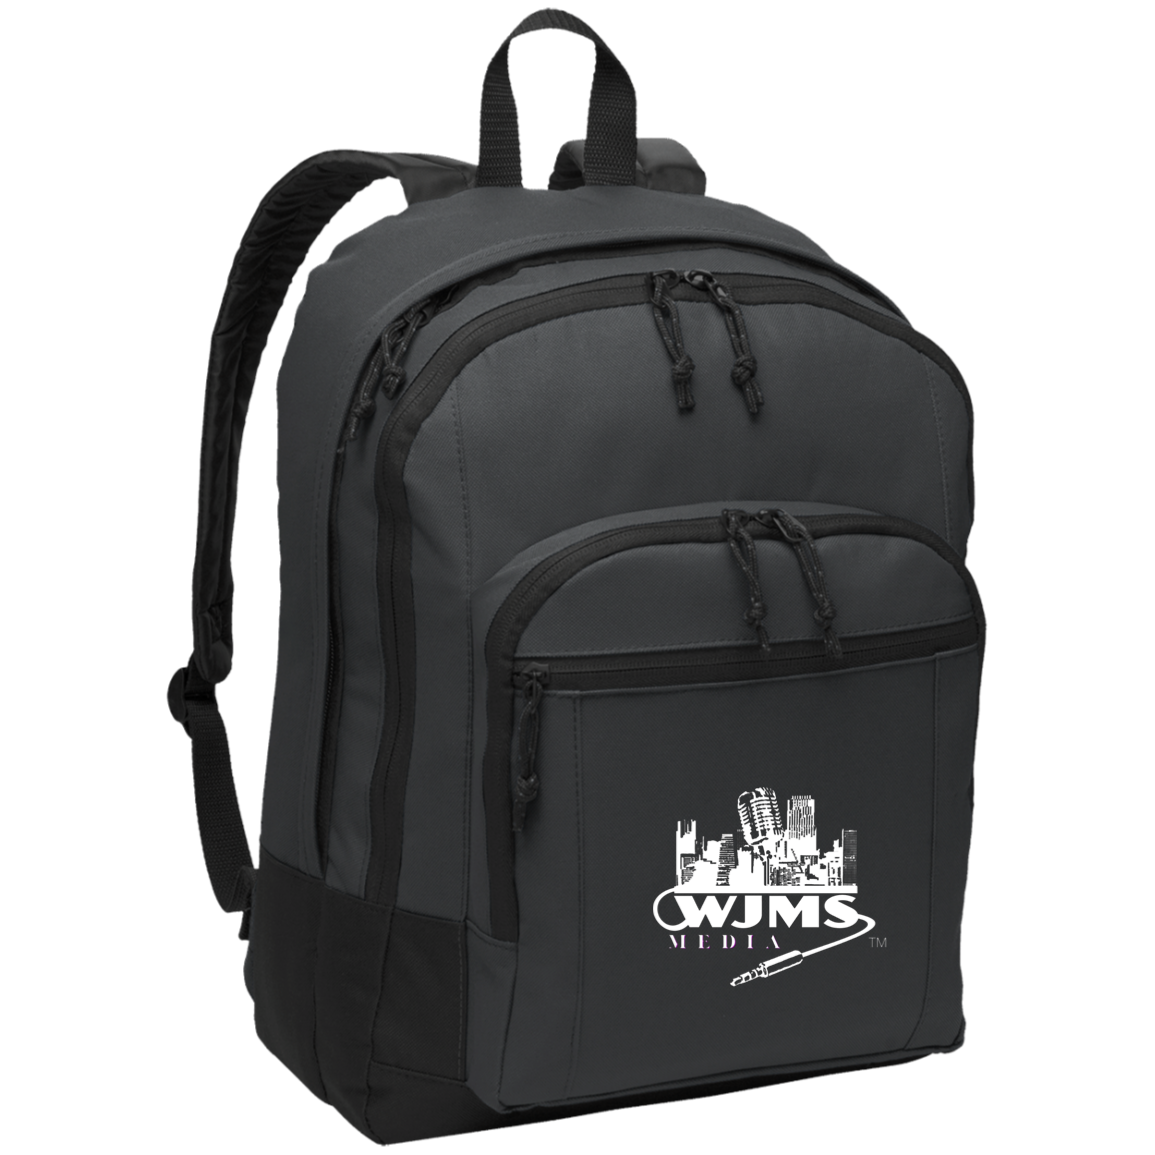 WJMS Basic Backpack